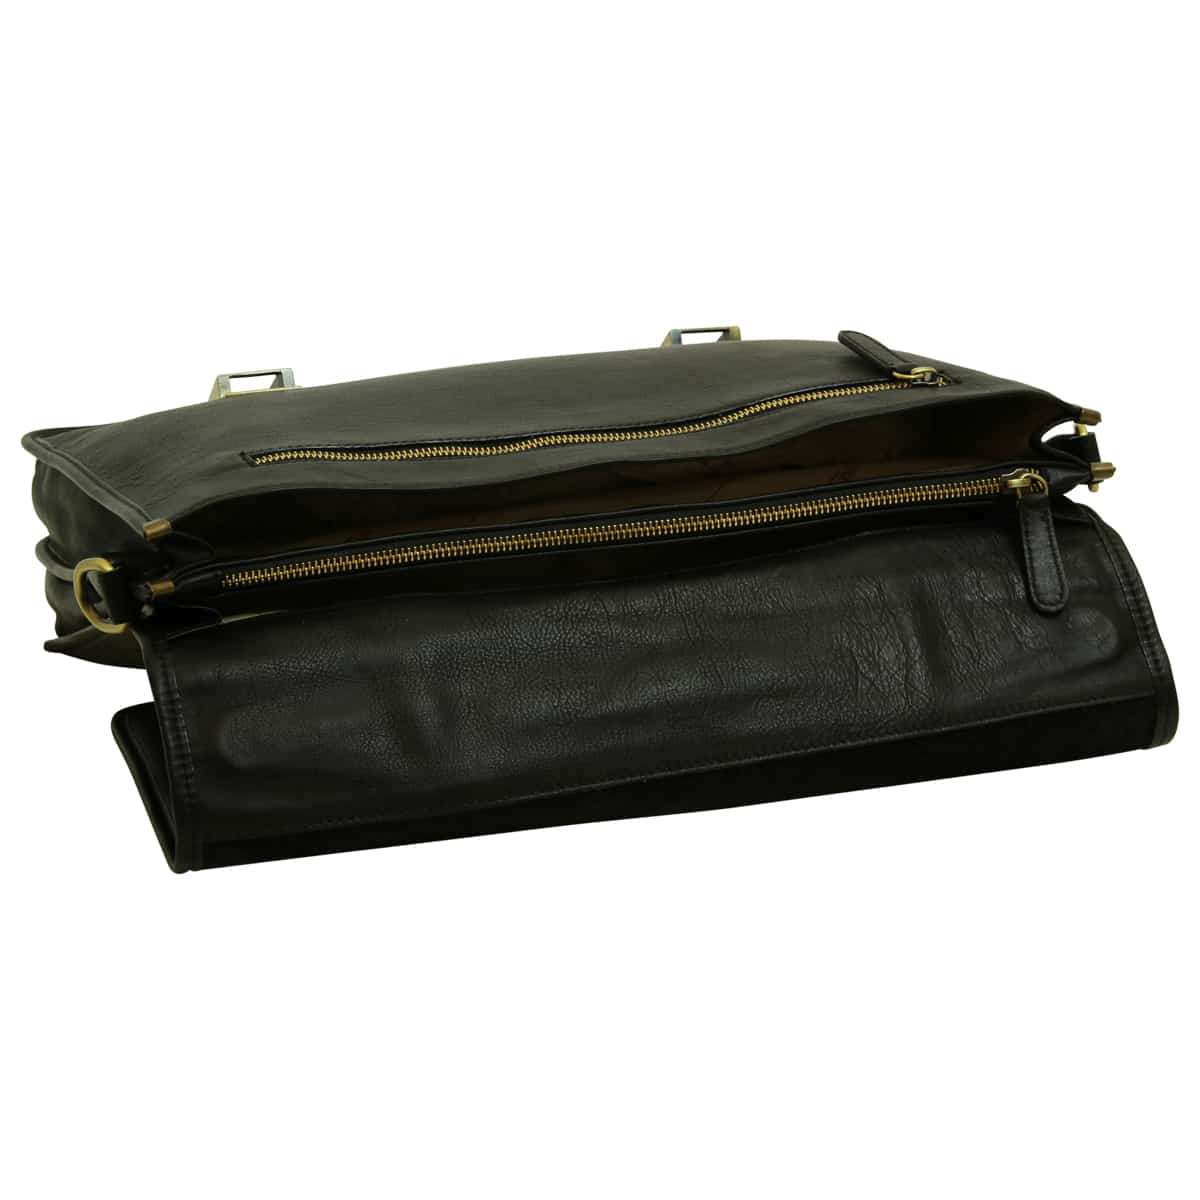 Soft Calfskin Leather Briefcase with shoulder strap - Black | 030991NE US | Old Angler Firenze